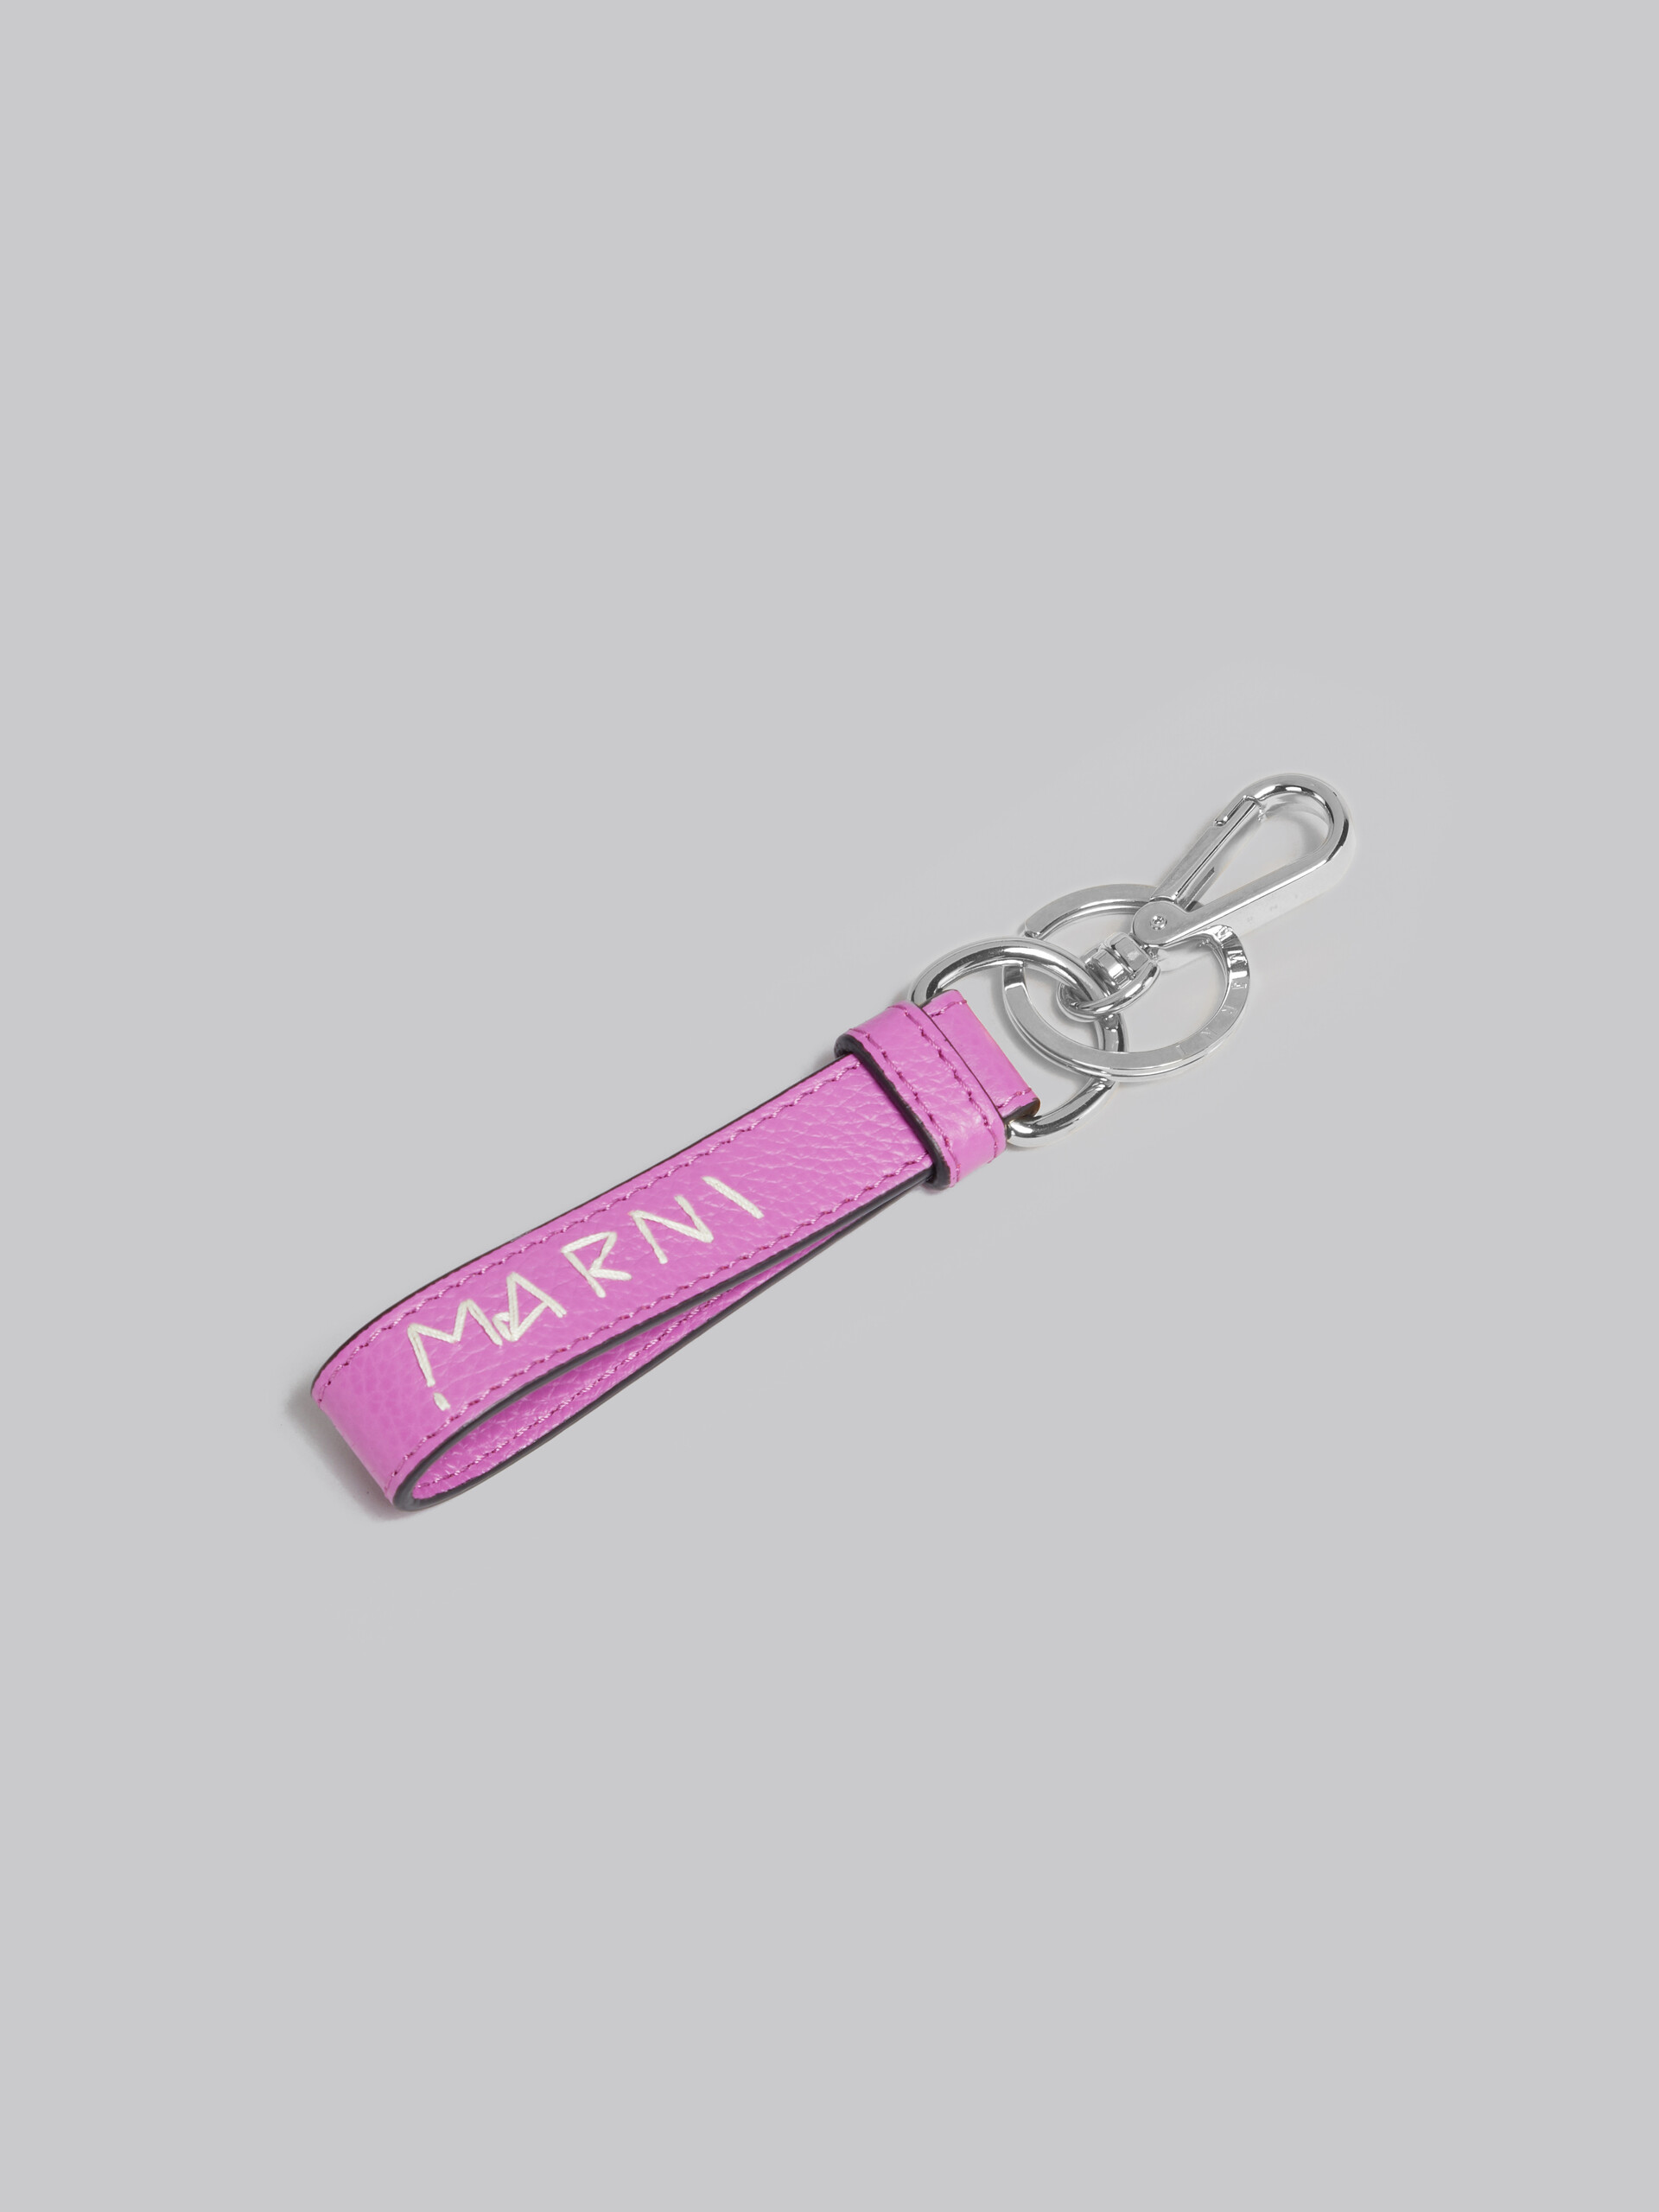 Schlüsselanhänger aus Leder mit Marni-Flicken in Rosa - Schlüsseletui - Image 2